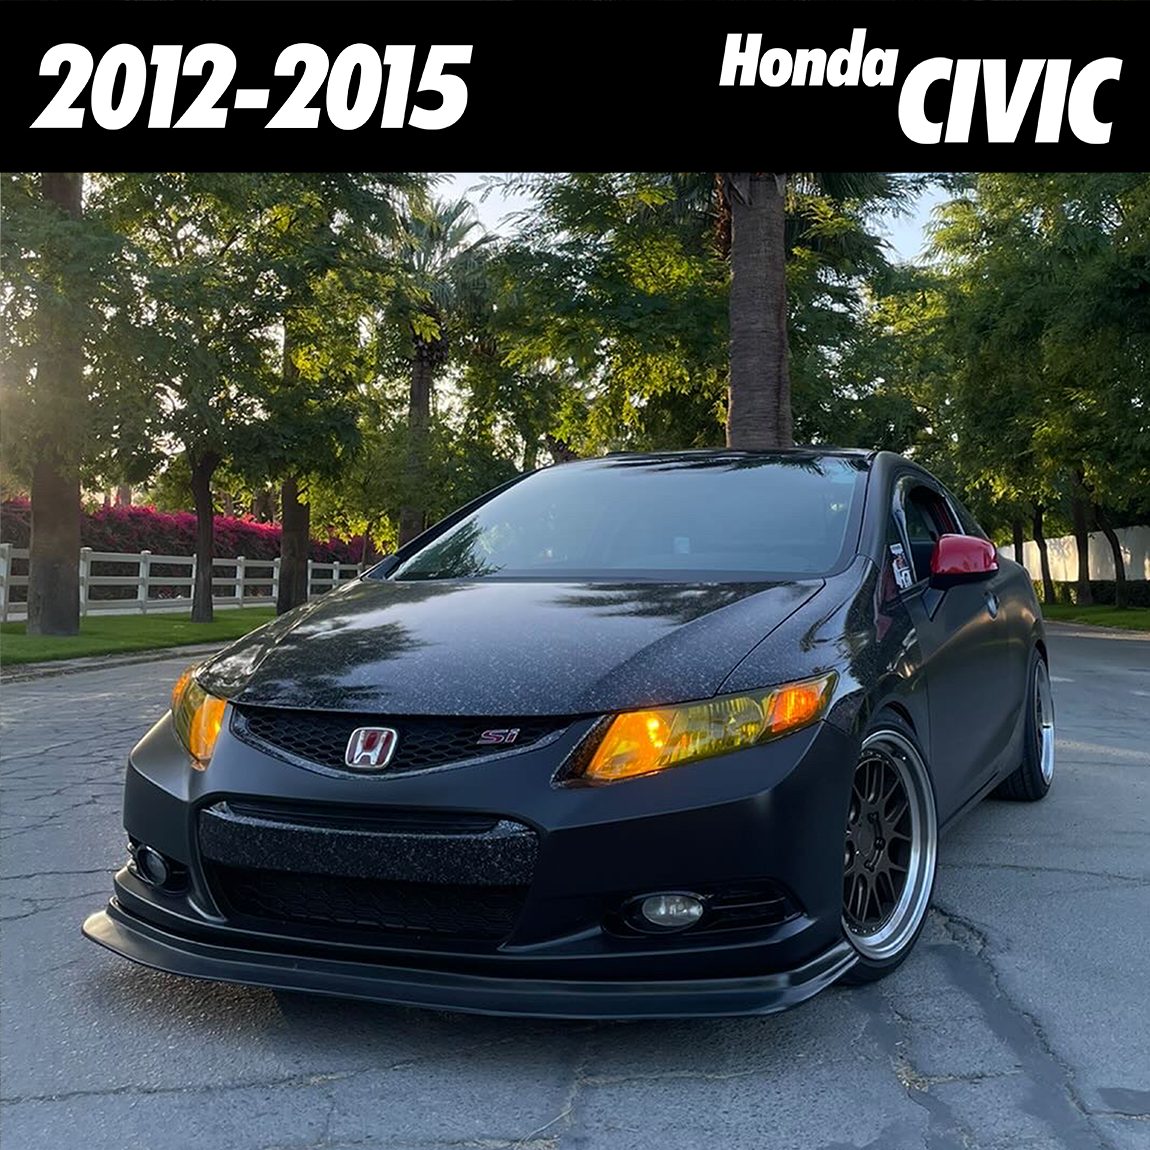 2012-2015 | Honda Civic